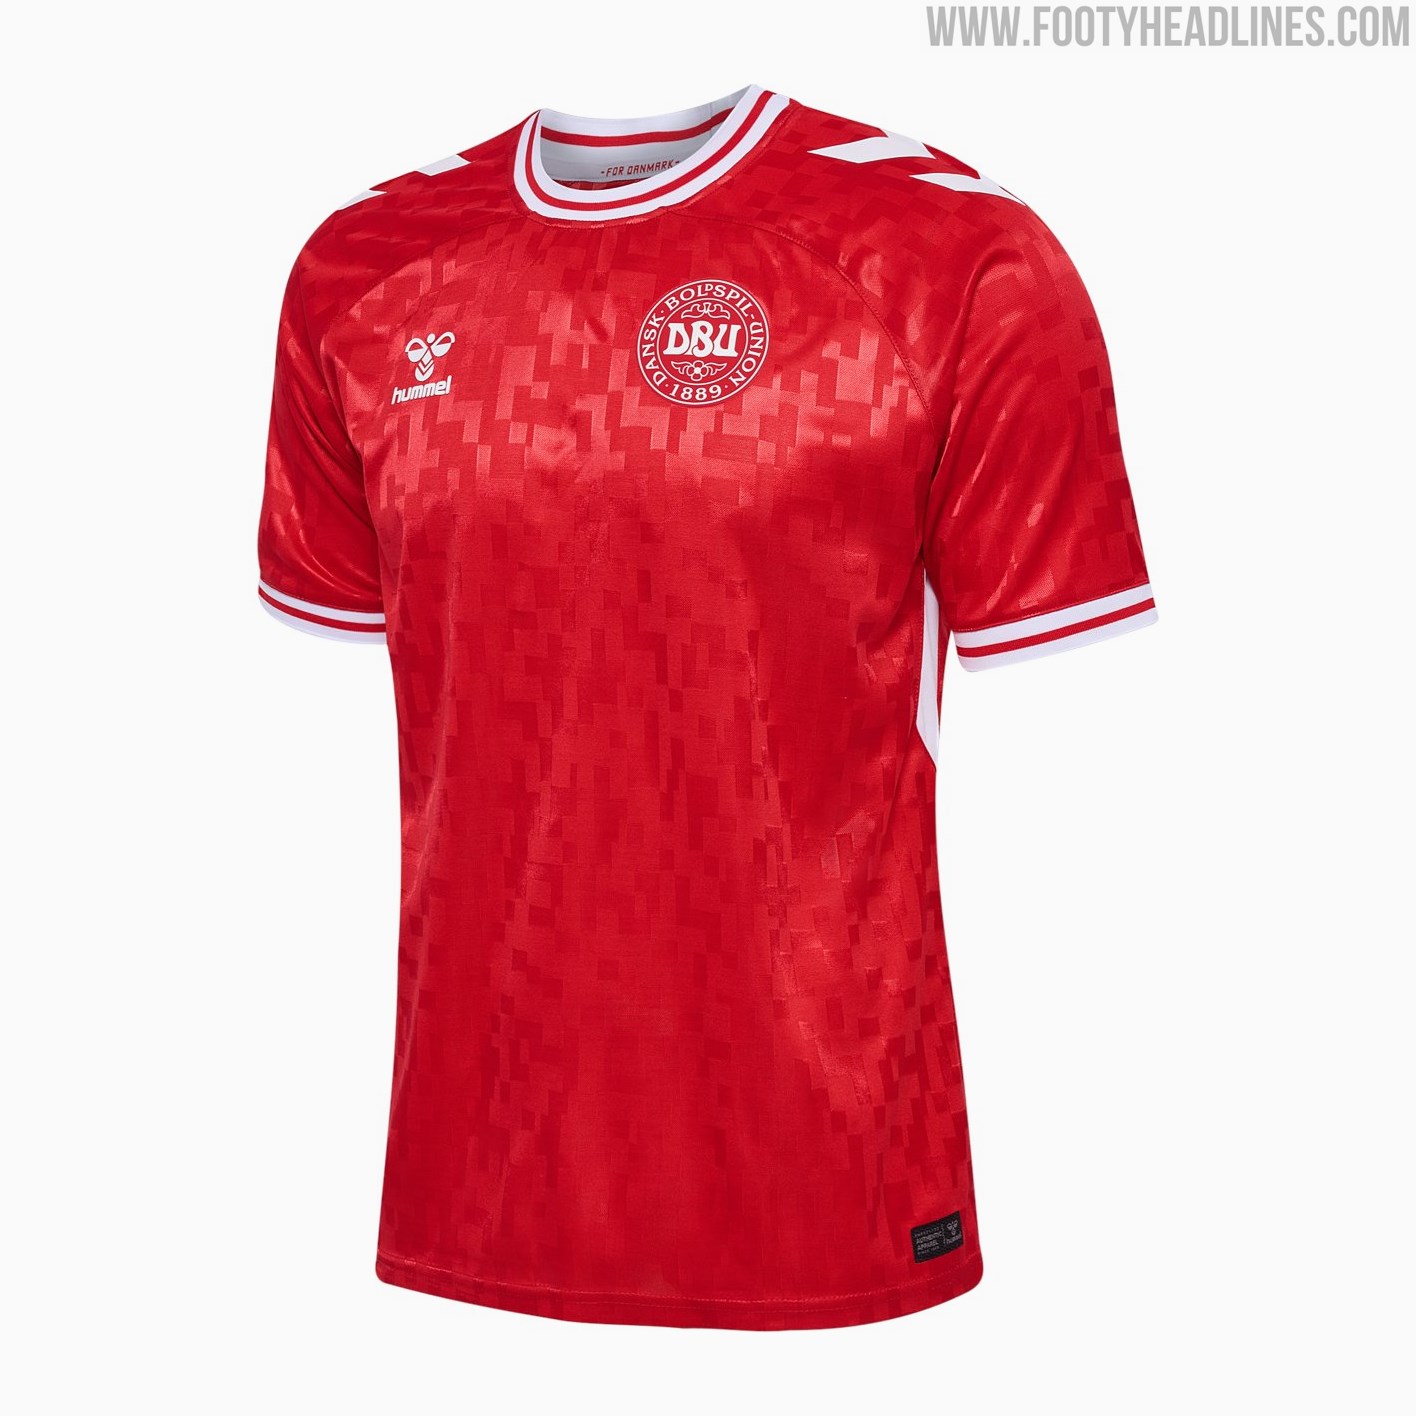 Denmark - Euro home jersey